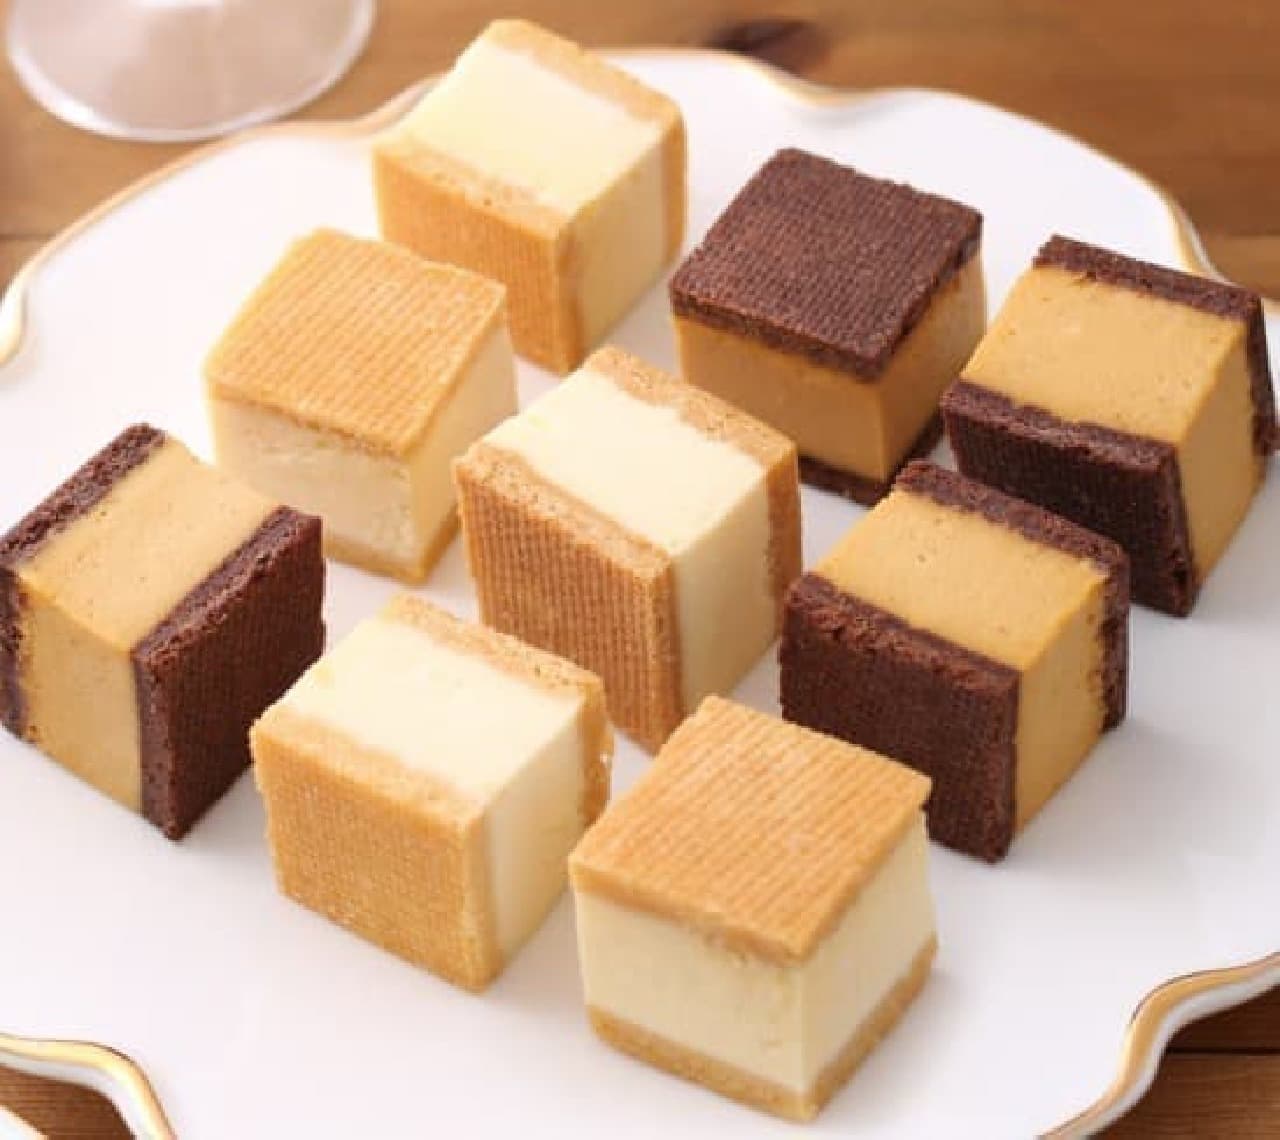 Cheesecake Specialty Corner" at Antenor Ikebukuro Seibu Store